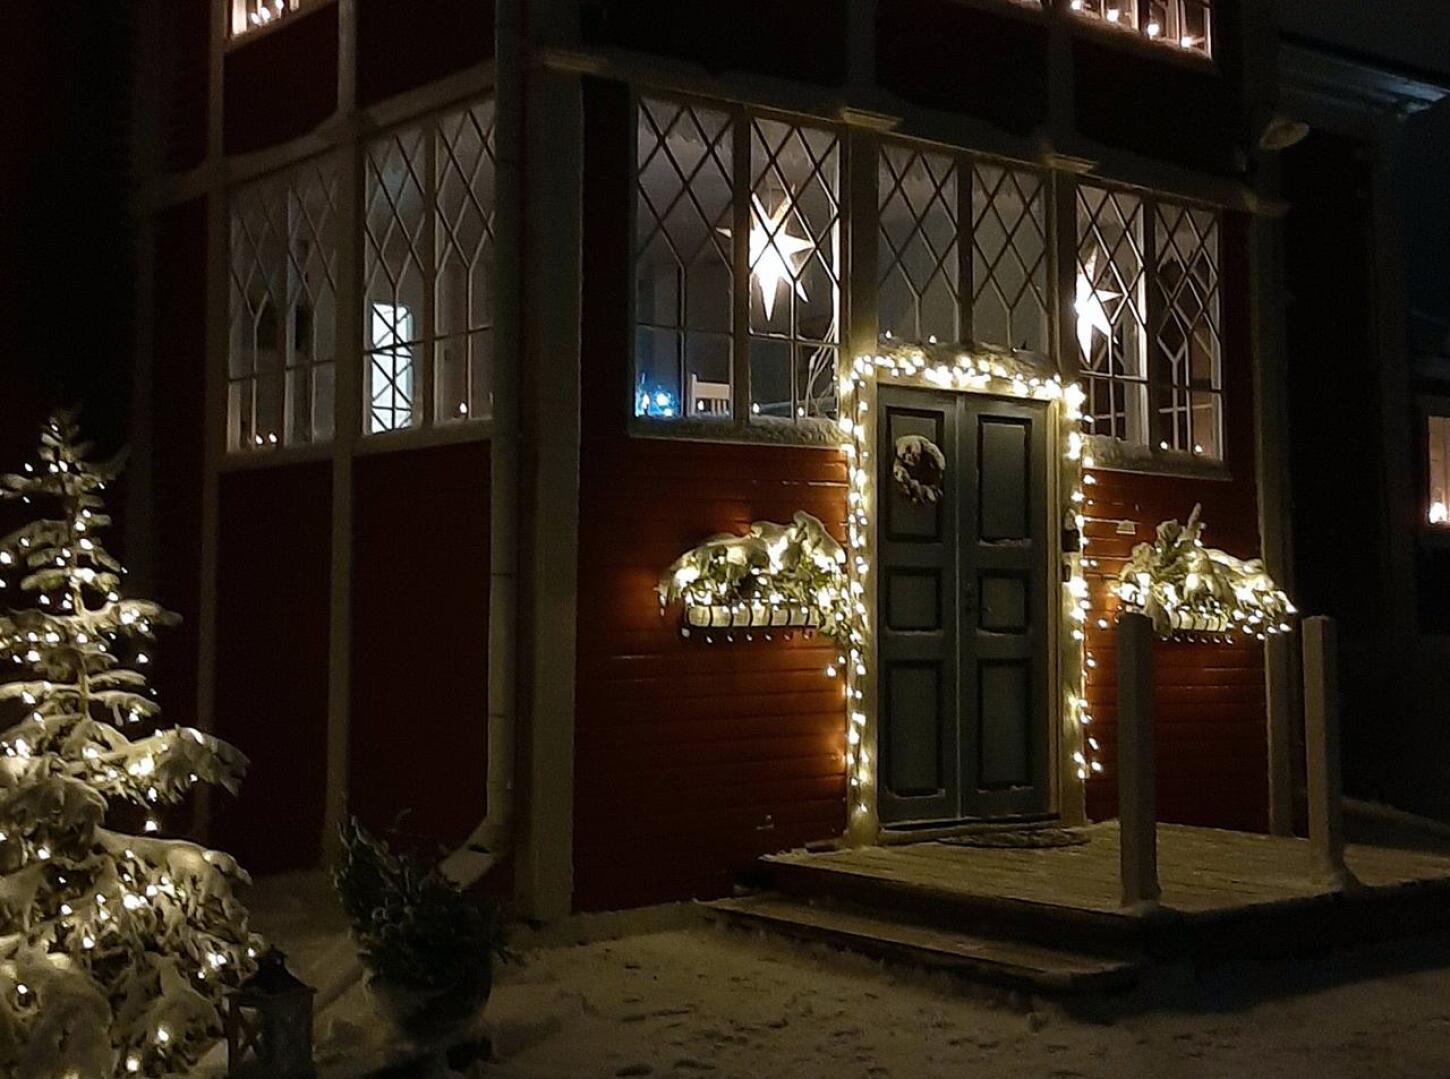 Hietalan pappilanakin toiminut talo on vuodelta 1826 ja sen rakensi Niilo Koskela. Päärakennukseen on tehty 1800-luvun lopulla tai 1900-luvun alussa nykyinen komea lasiveranta, joka on säilyttänyt asunsa tähän päivään. Nykyiset omistajat koristelevat kuistin kauniisti jouluun ja avaavat ovensa sunnuntaina kuudelta.